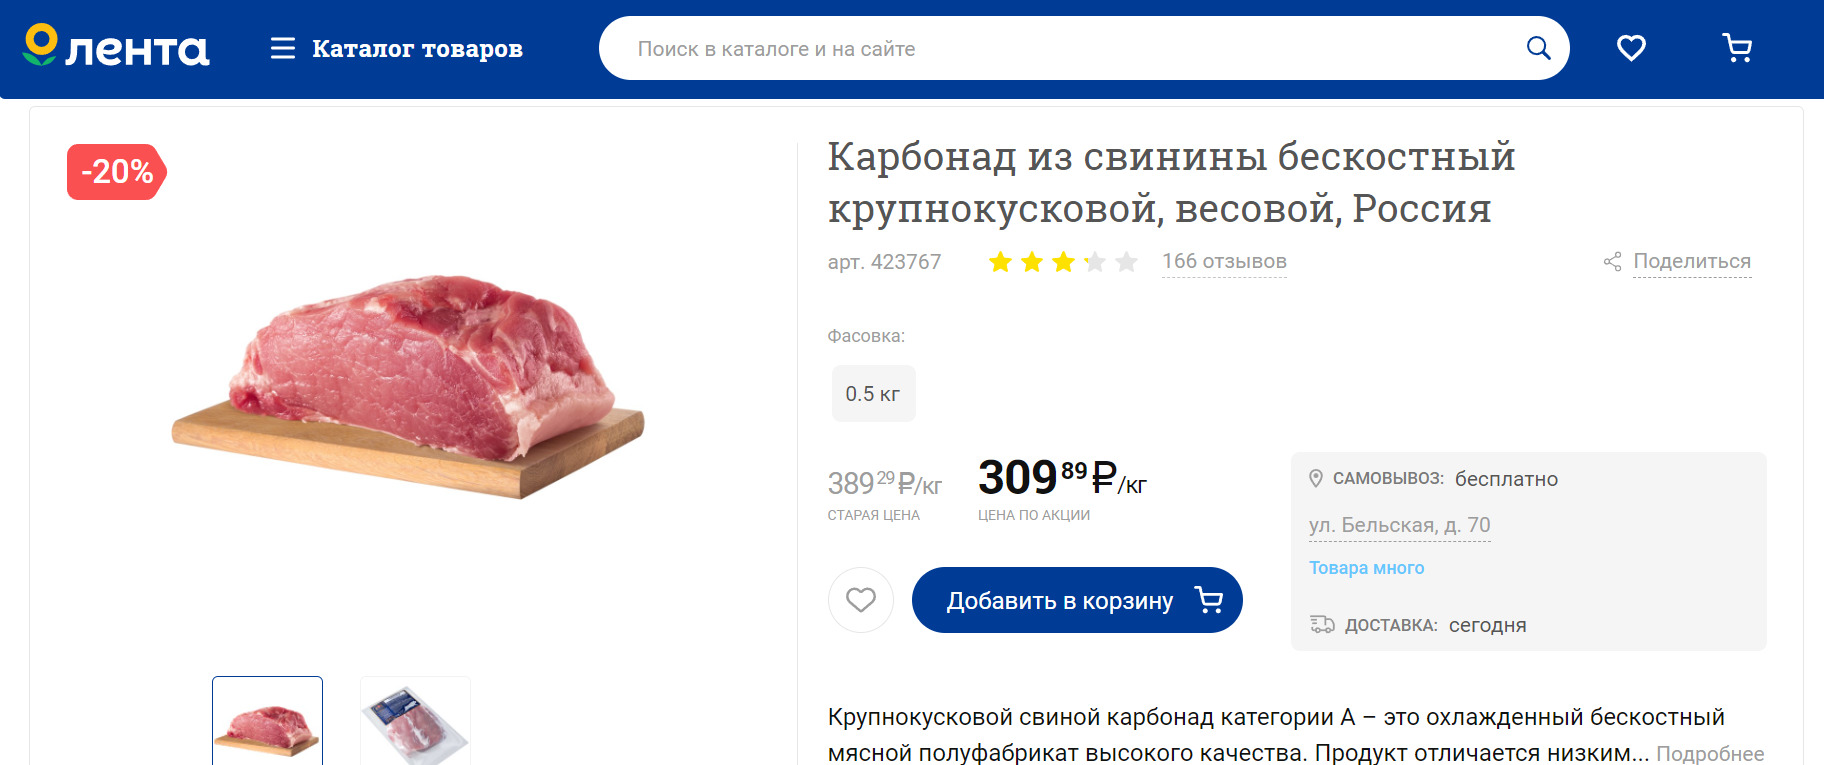 По карте покупателя карбонад из свинины можно купить за 309 рублей